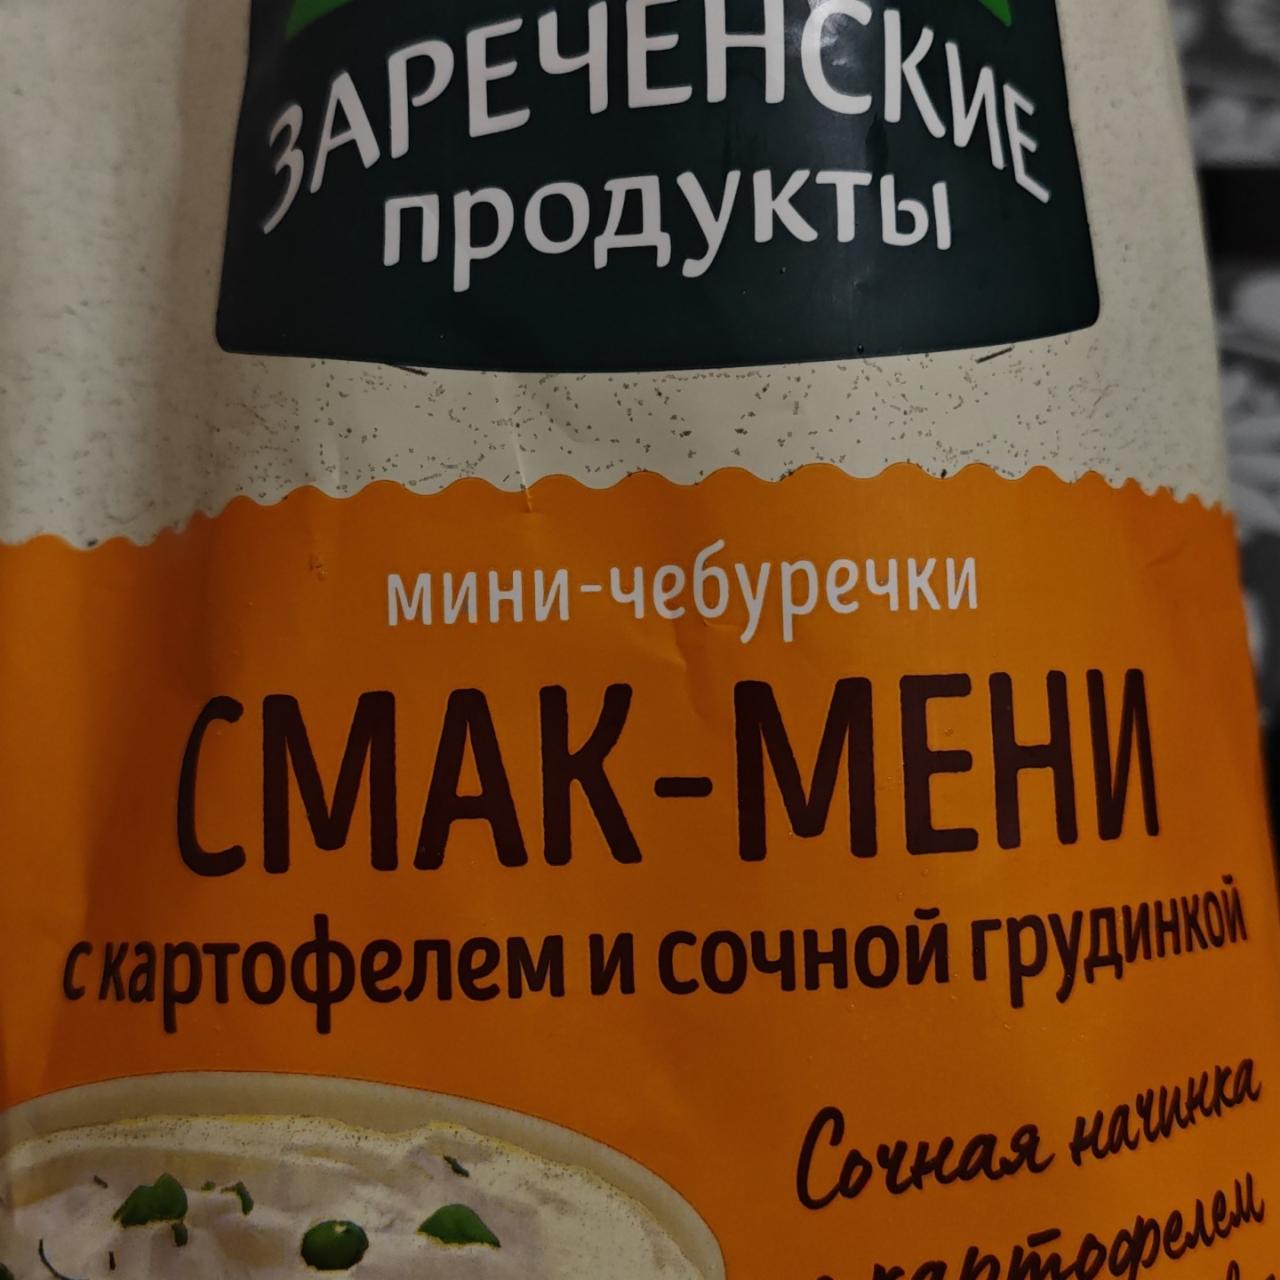 Фото - Мини-чебуречки Смак-Мени с картофелем и сочной грудинкой Зареченские продукты